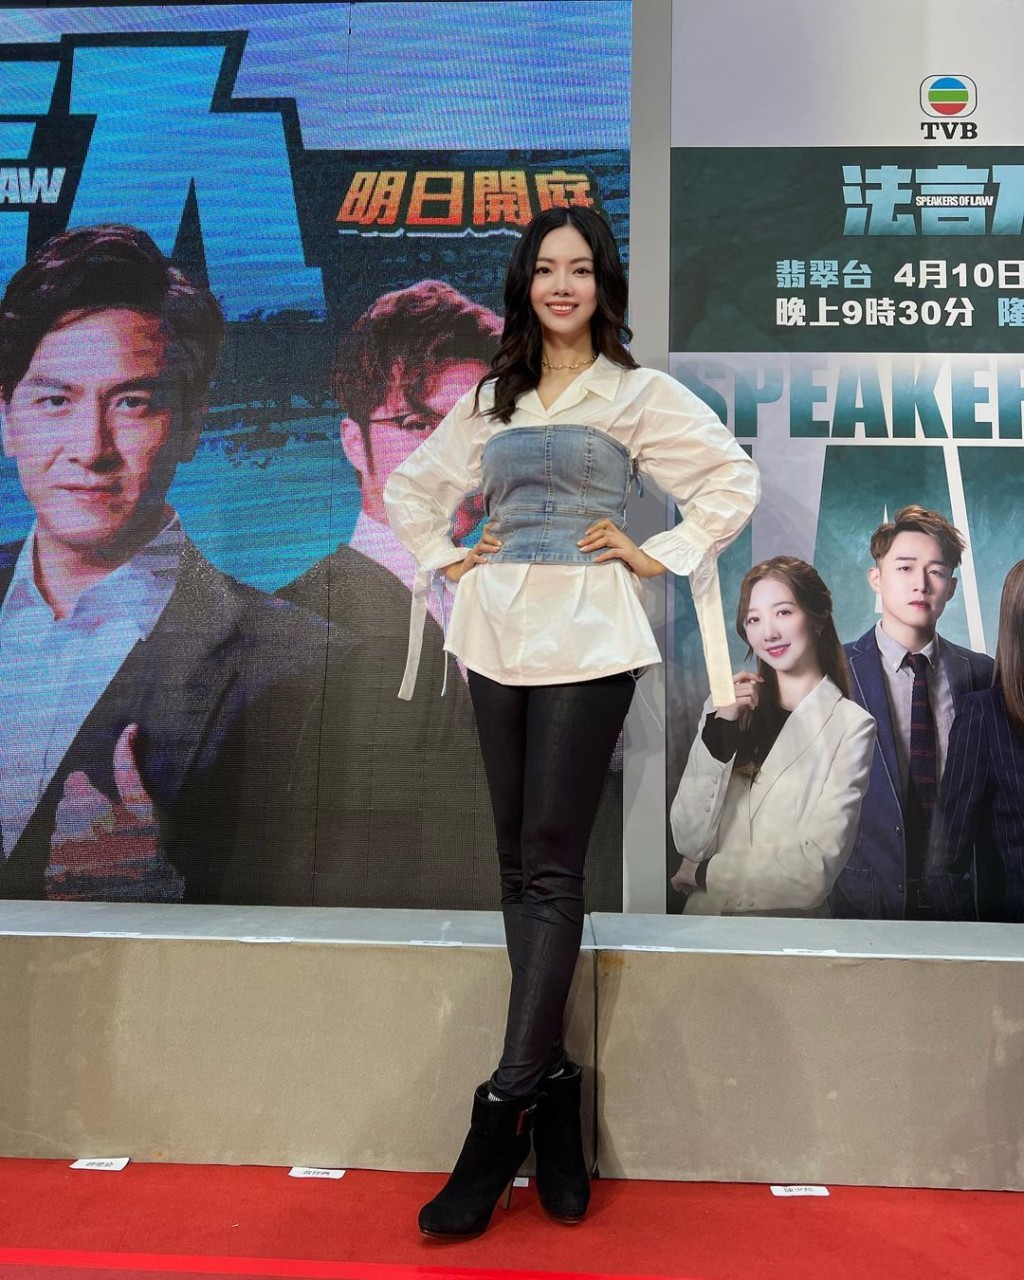 林熹瞳现时在TVB有不少机会。